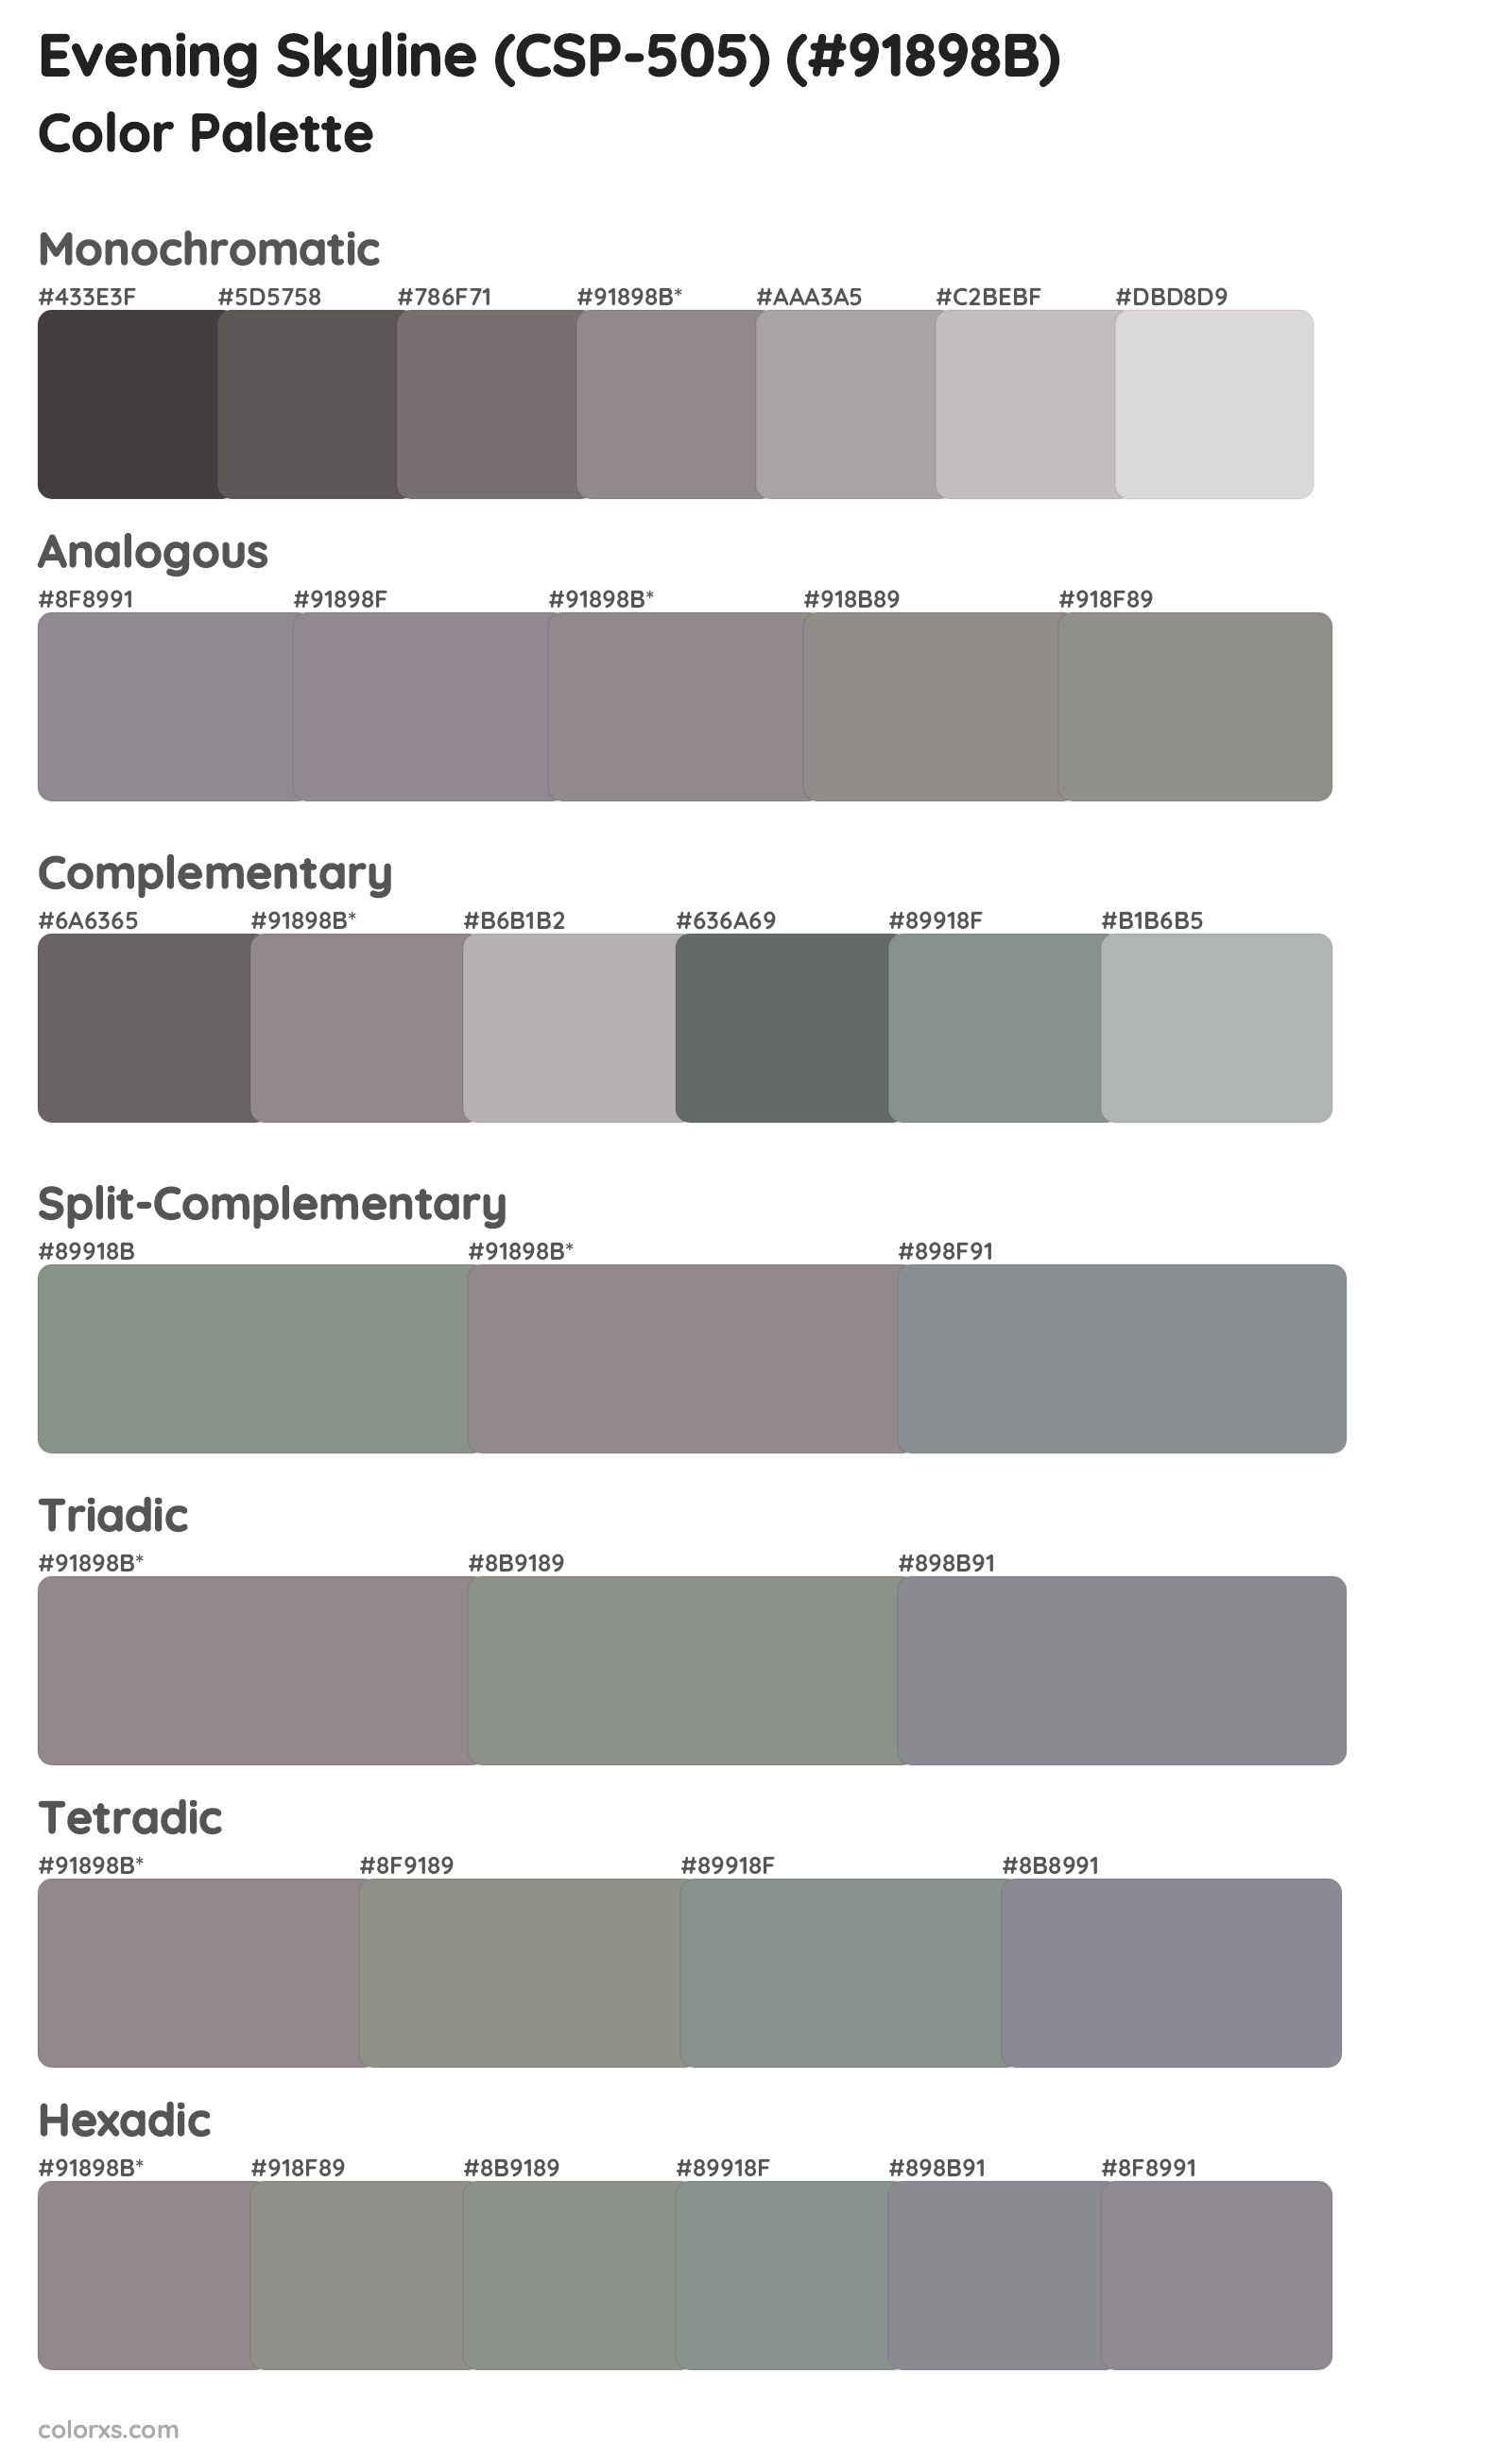 Evening Skyline (CSP-505) Color Scheme Palettes